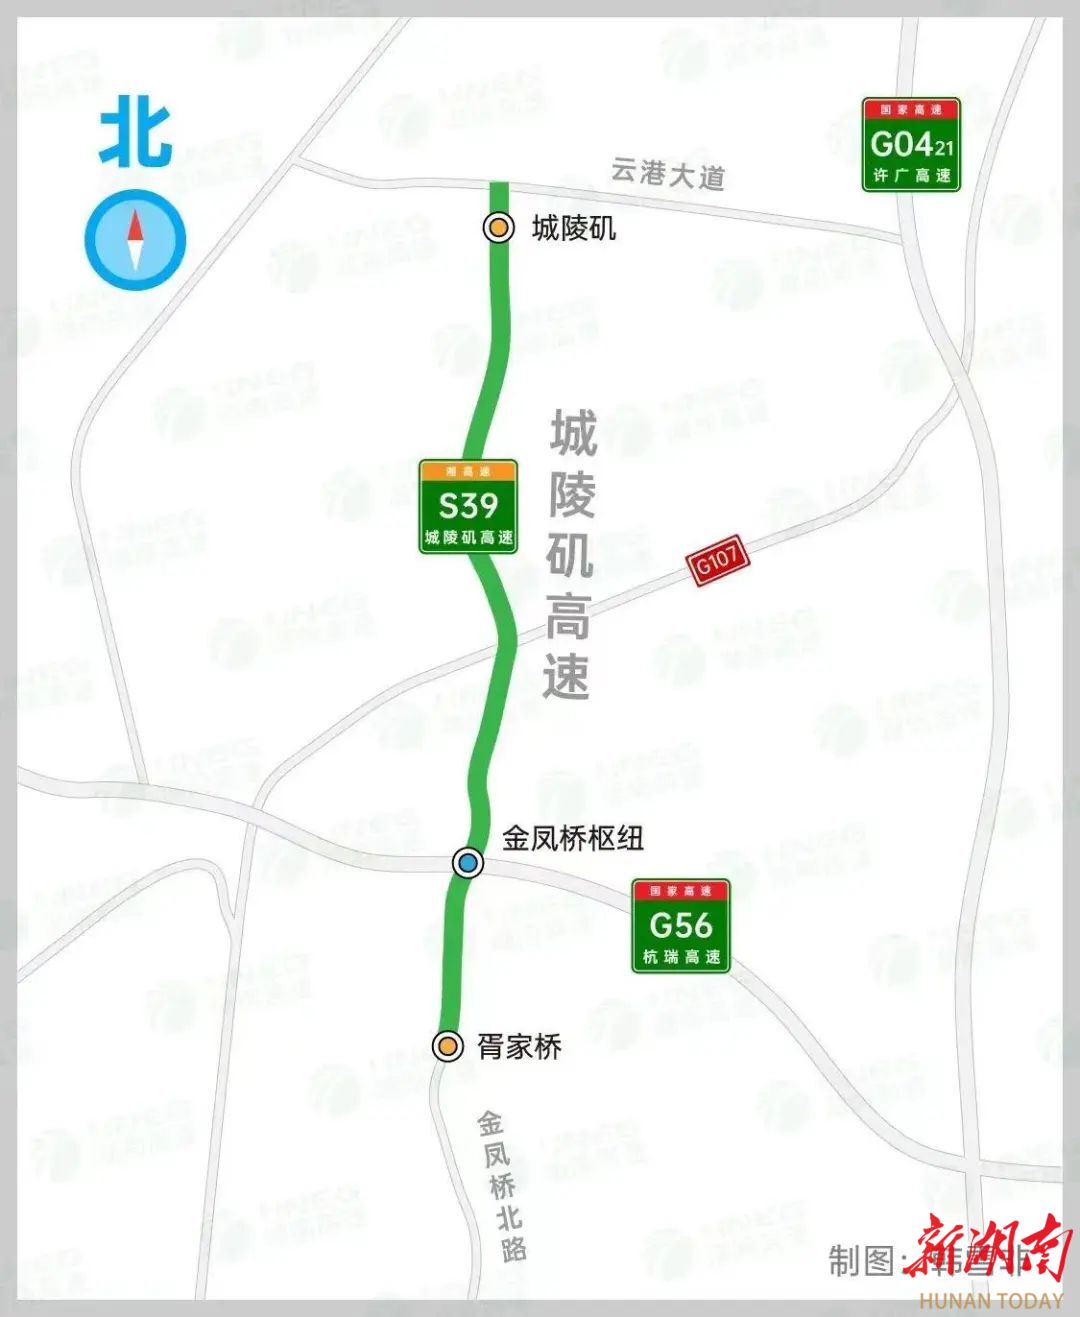 10月1日0时，四川泸州至重庆永川高速公路将正式通车 - 封面新闻